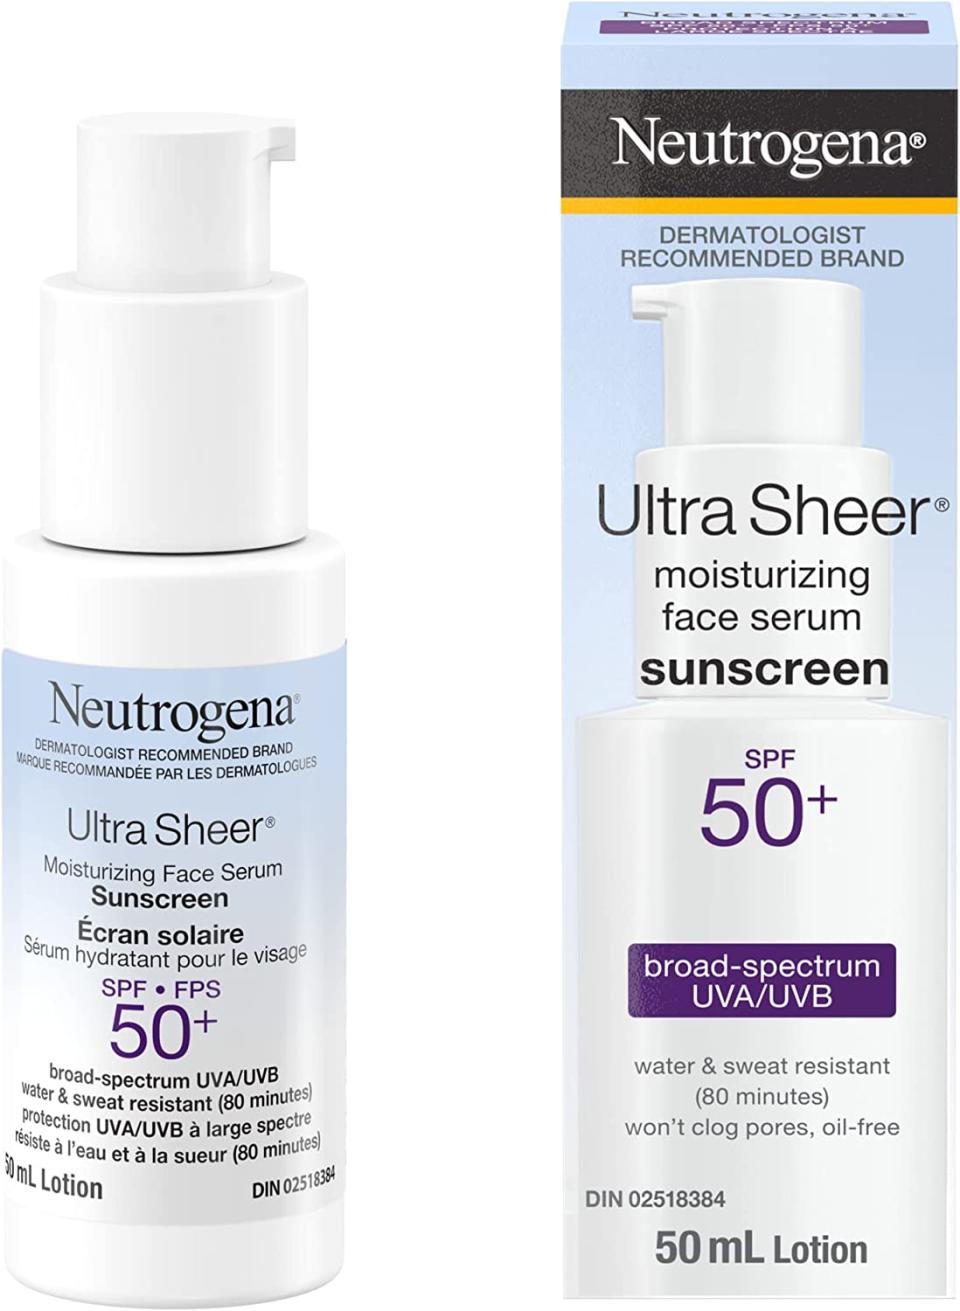 Neutrogena Ultra Sheer Face Sunscreen (Photo via Amazon)